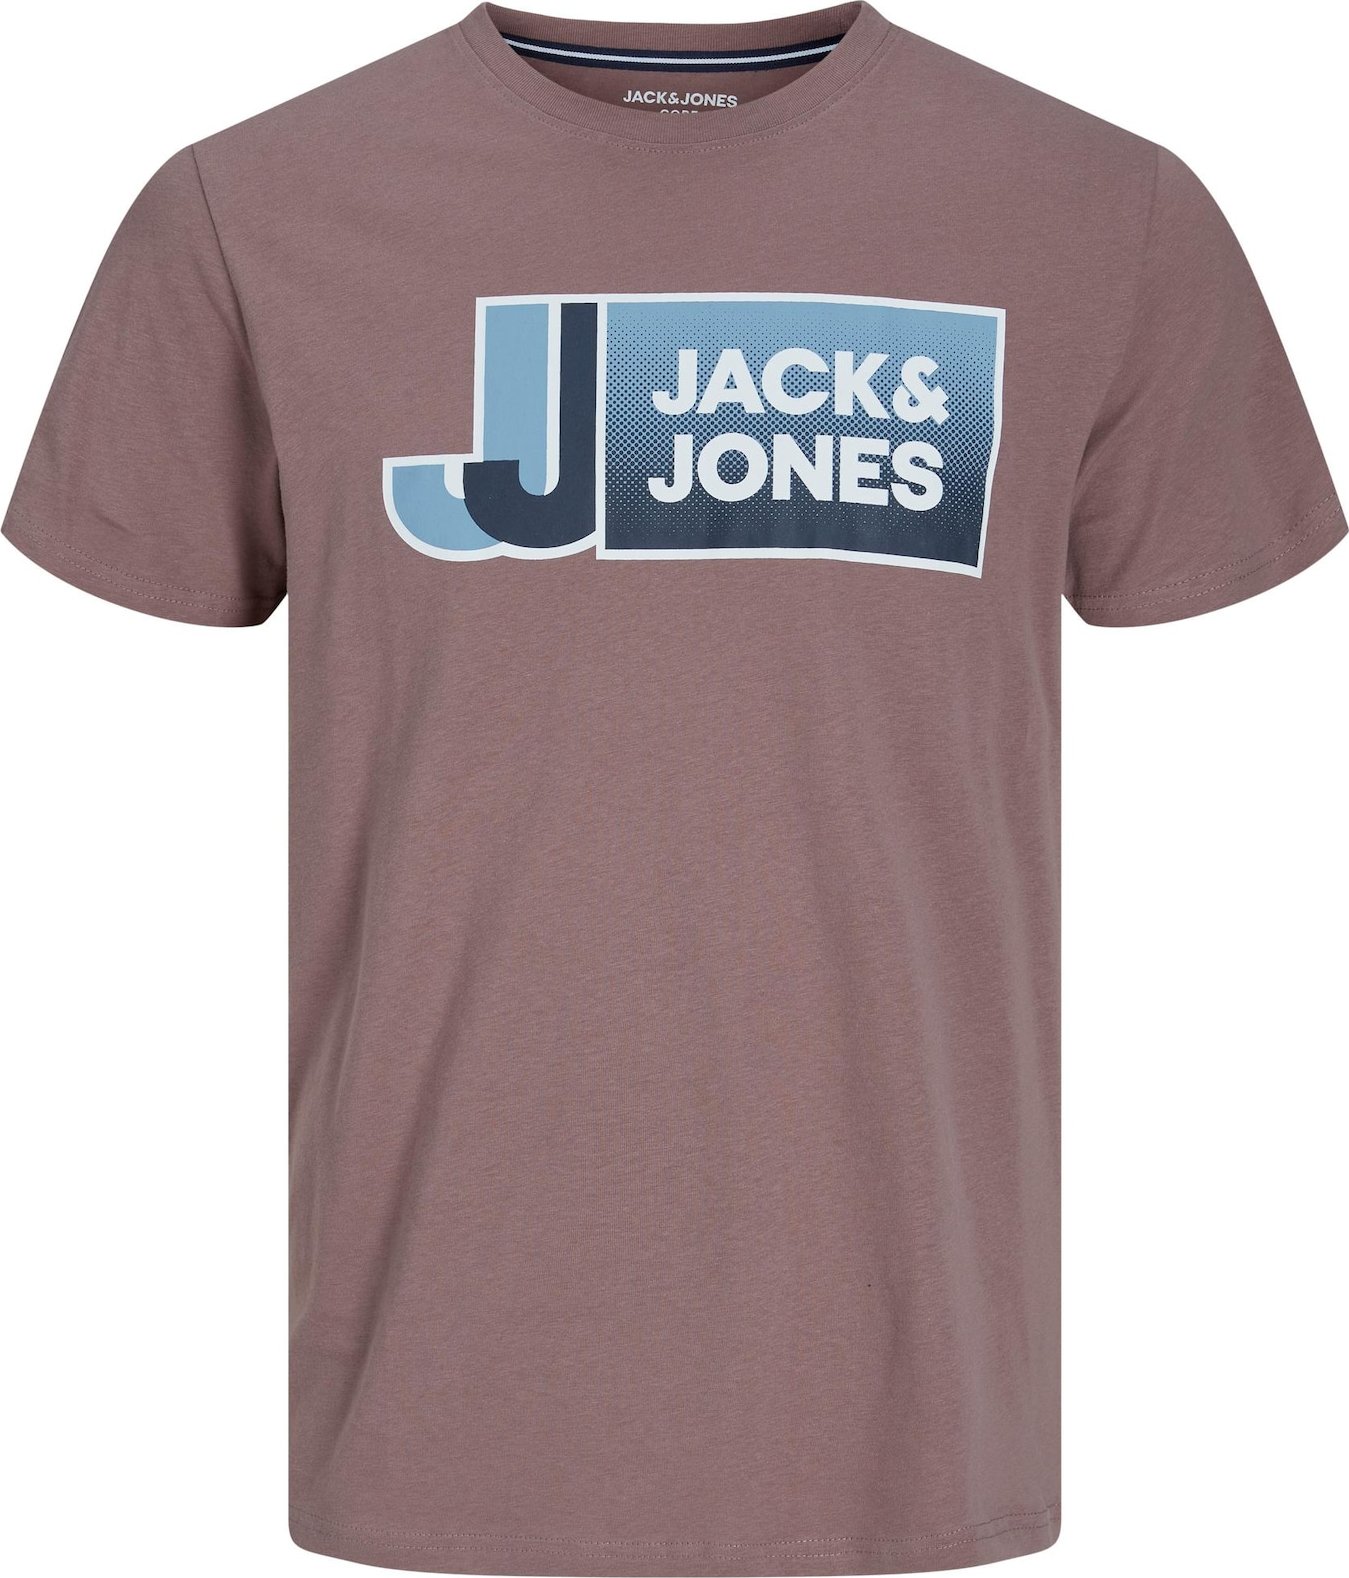 JACK & JONES Tričko světlemodrá / tmavě modrá / bledě fialová / bílá